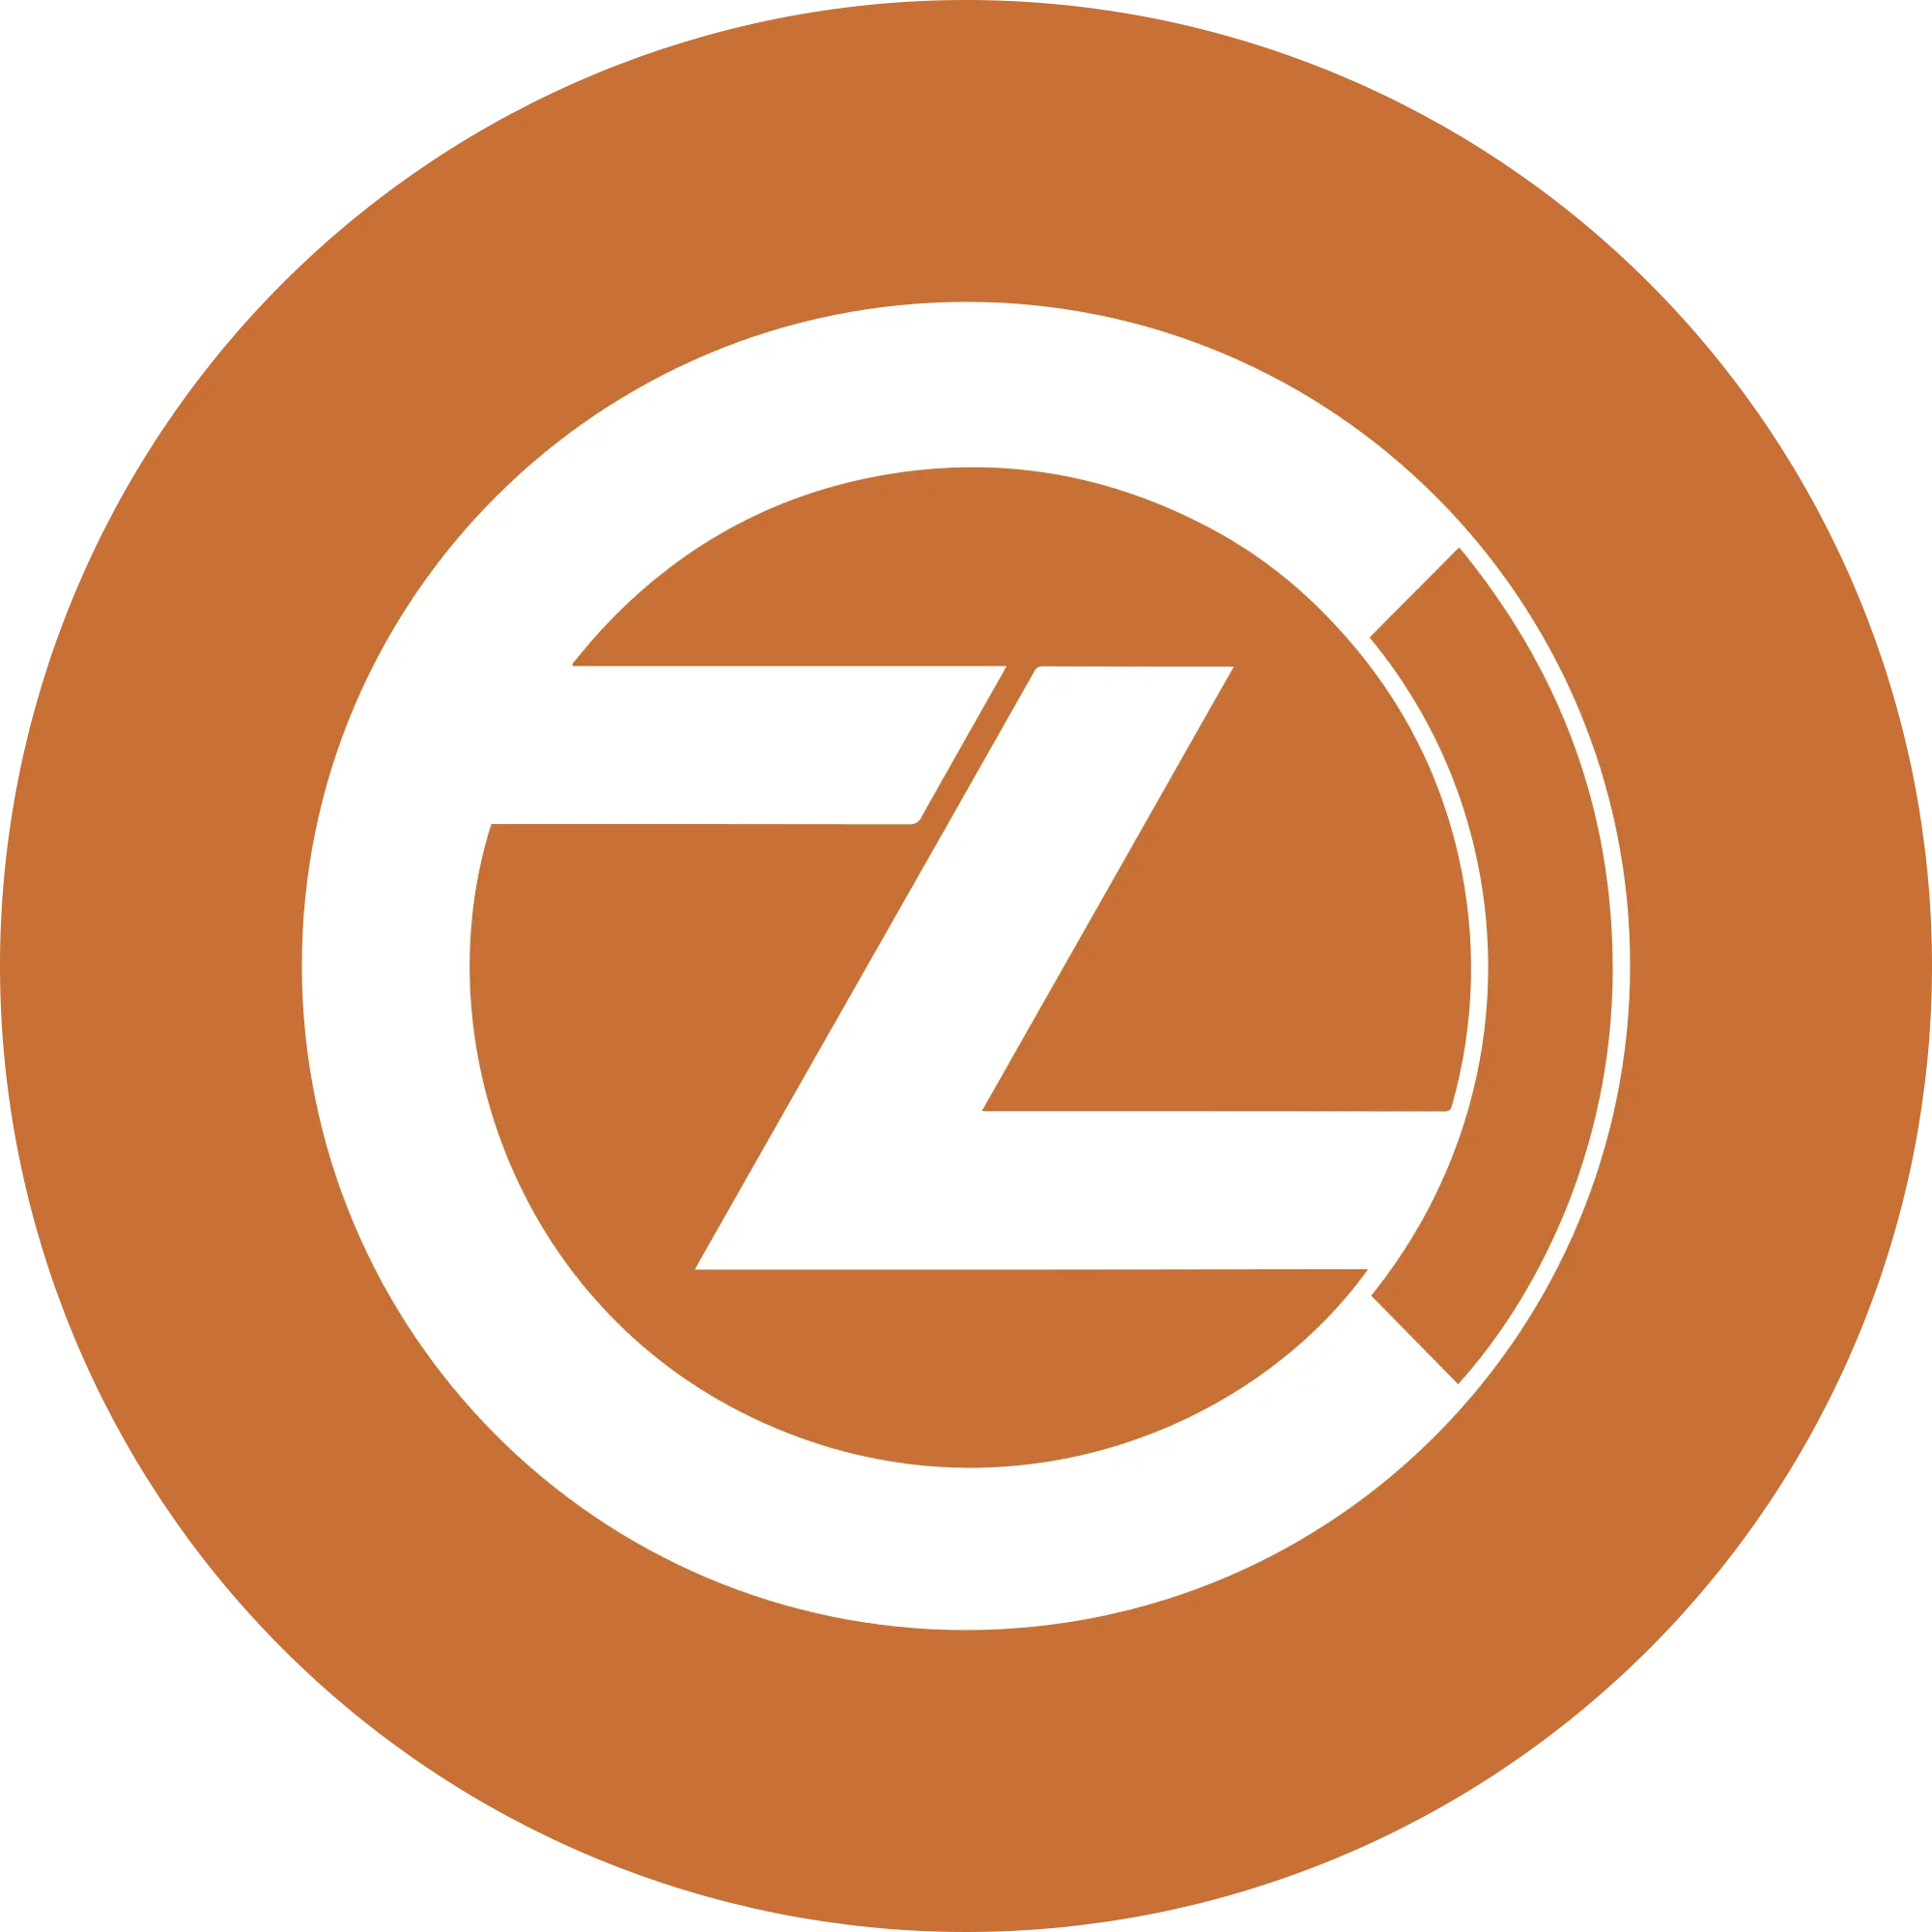 ZClassic (ZCL) logo